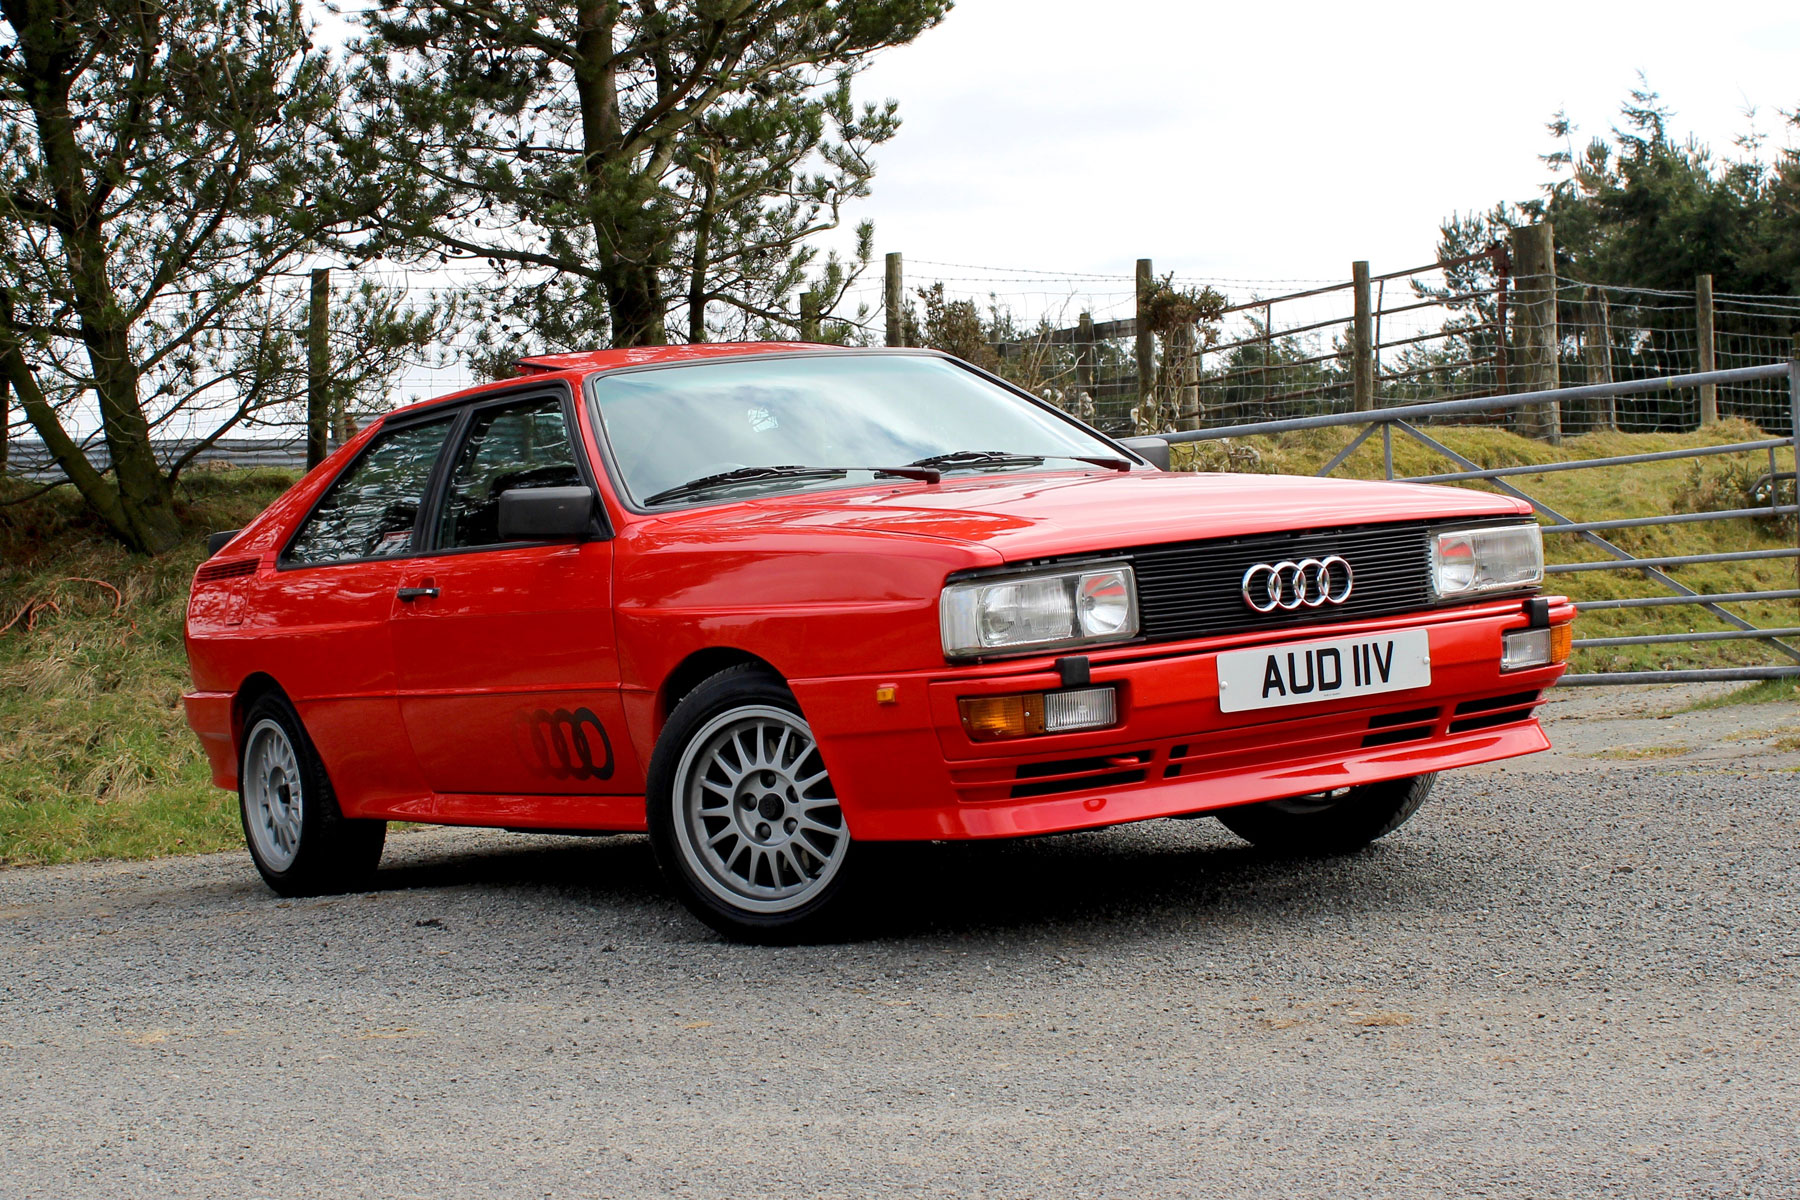 1983 Audi Quattro review: Retro Road Test